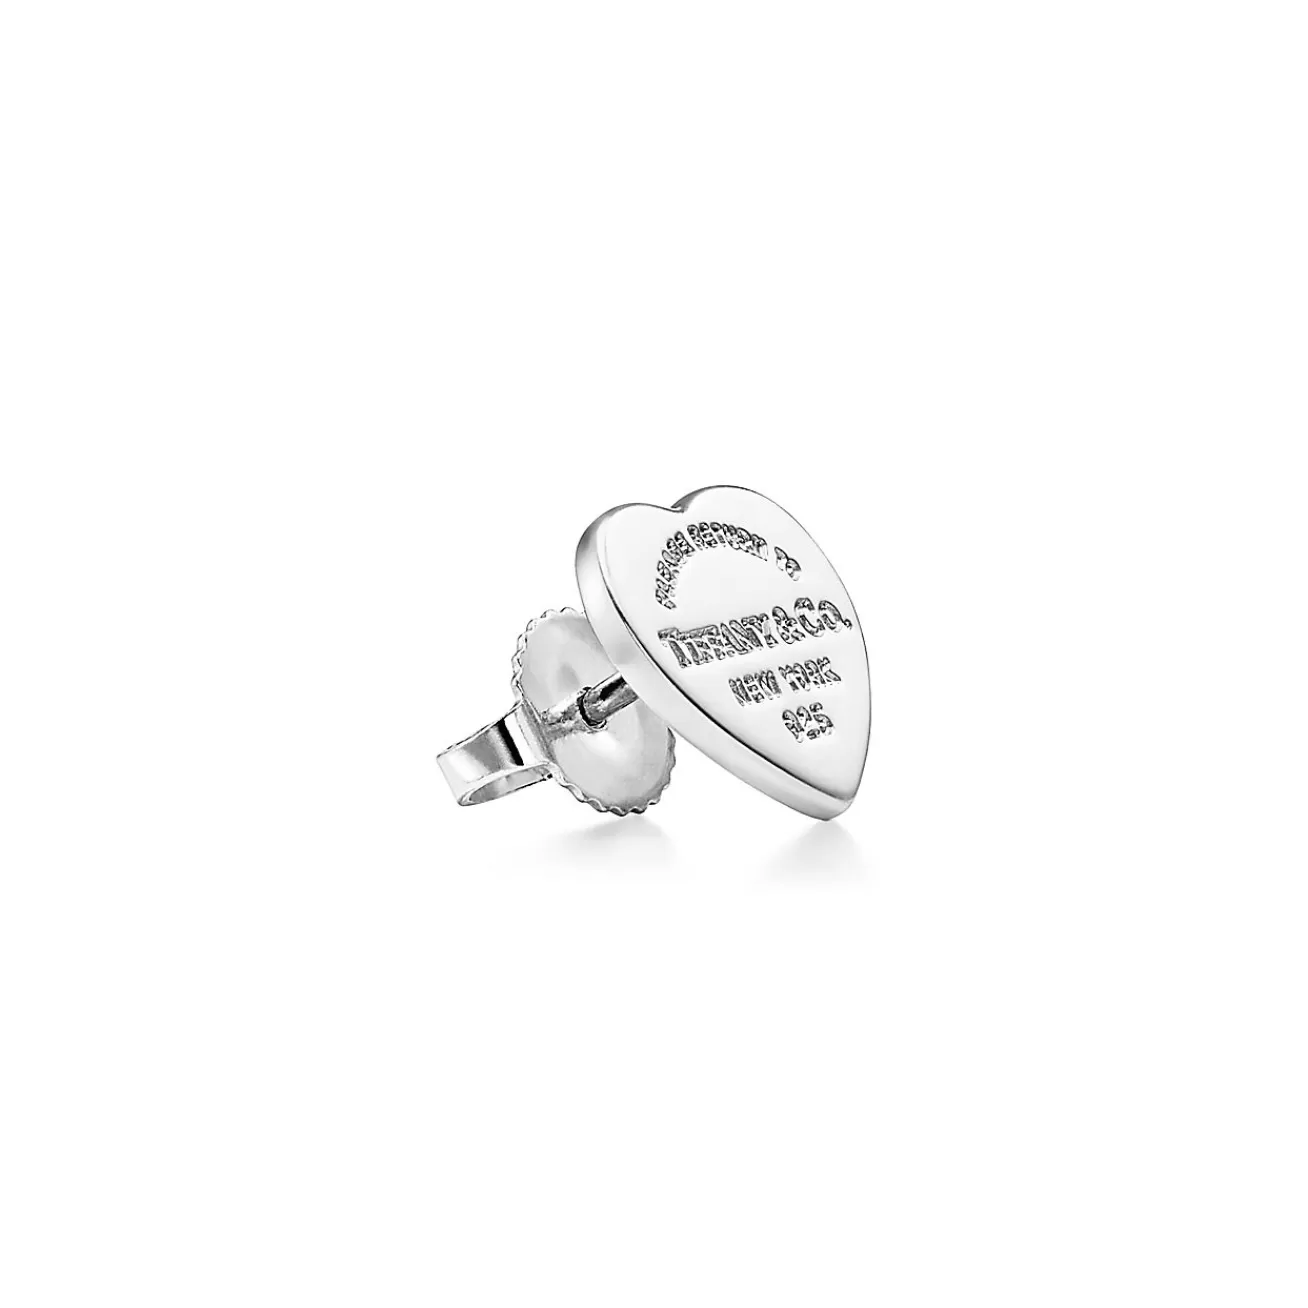 Tiffany & Co. Return to Tiffany® Lovestruck Heart Tag & Arrow Earrings in Sterling Silver | ^ Earrings | Sterling Silver Jewelry